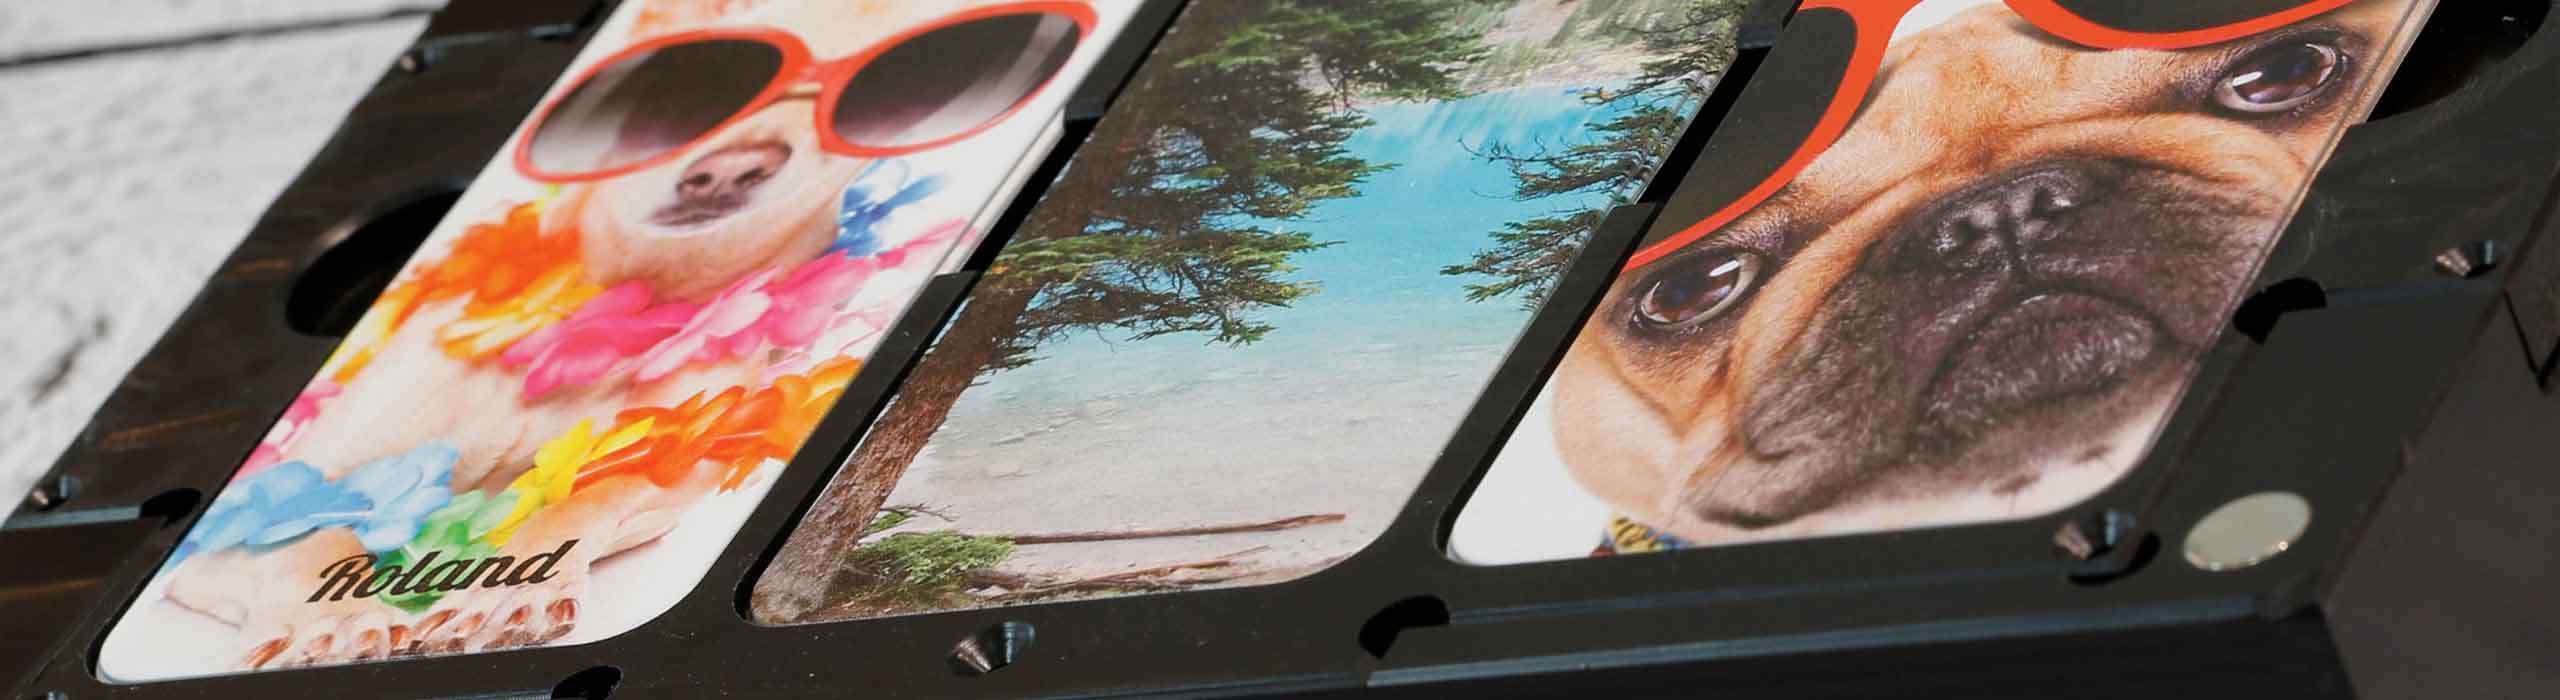 Telefon sablon UV LEF nyomtatóhoz 4 napszemüveges kutyás és tengerparti témájú tokkal